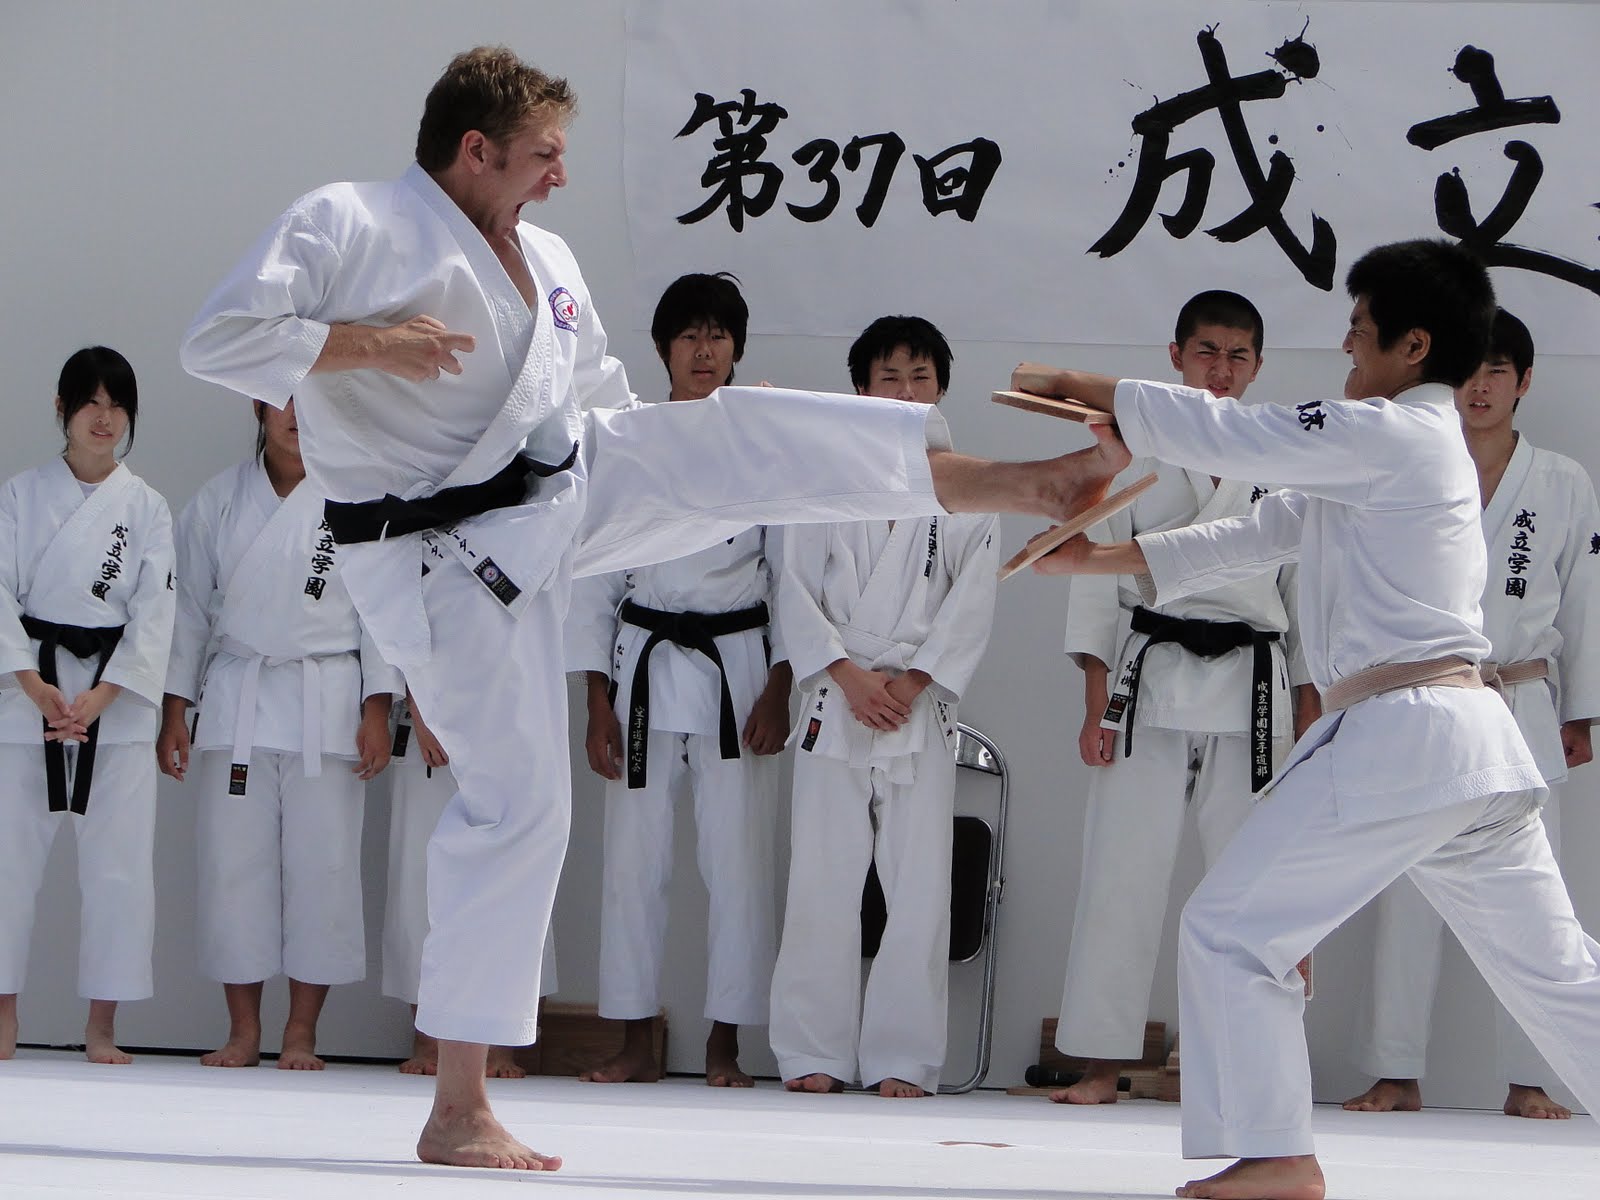 best-of-karate-dojos-in-japan-karate-dojos-e-v